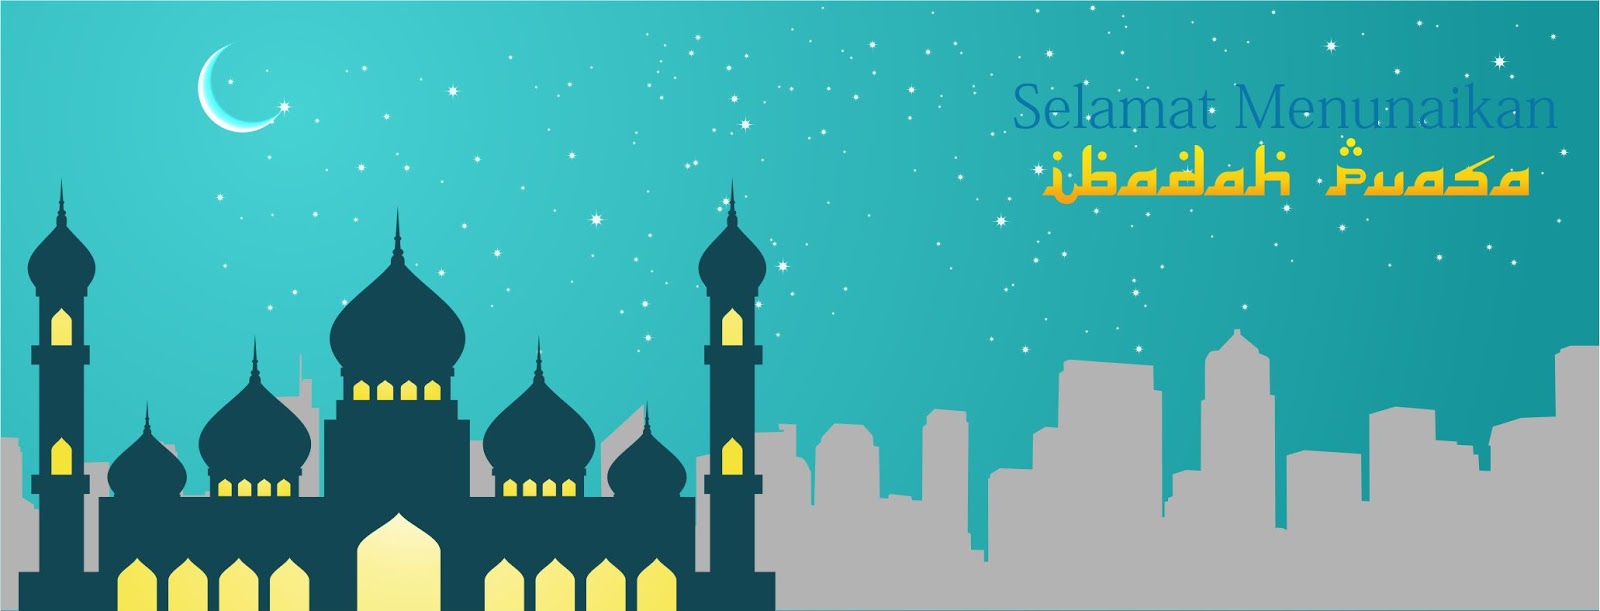 Download Desain Template Ramadhan - Asal Tau